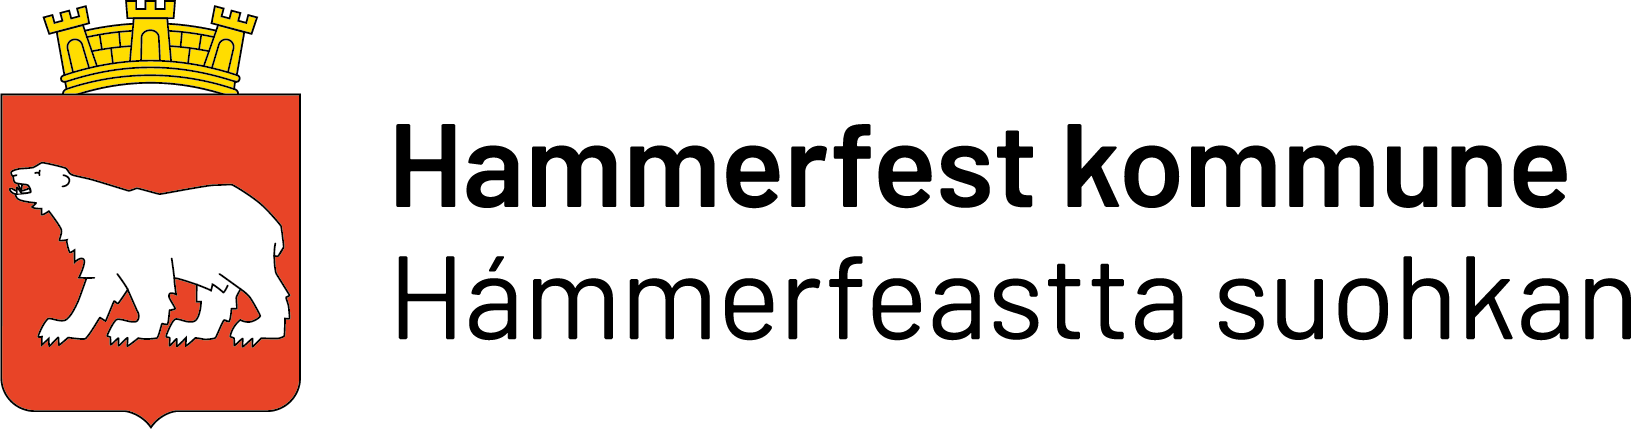 Hammerfest Kommune logo